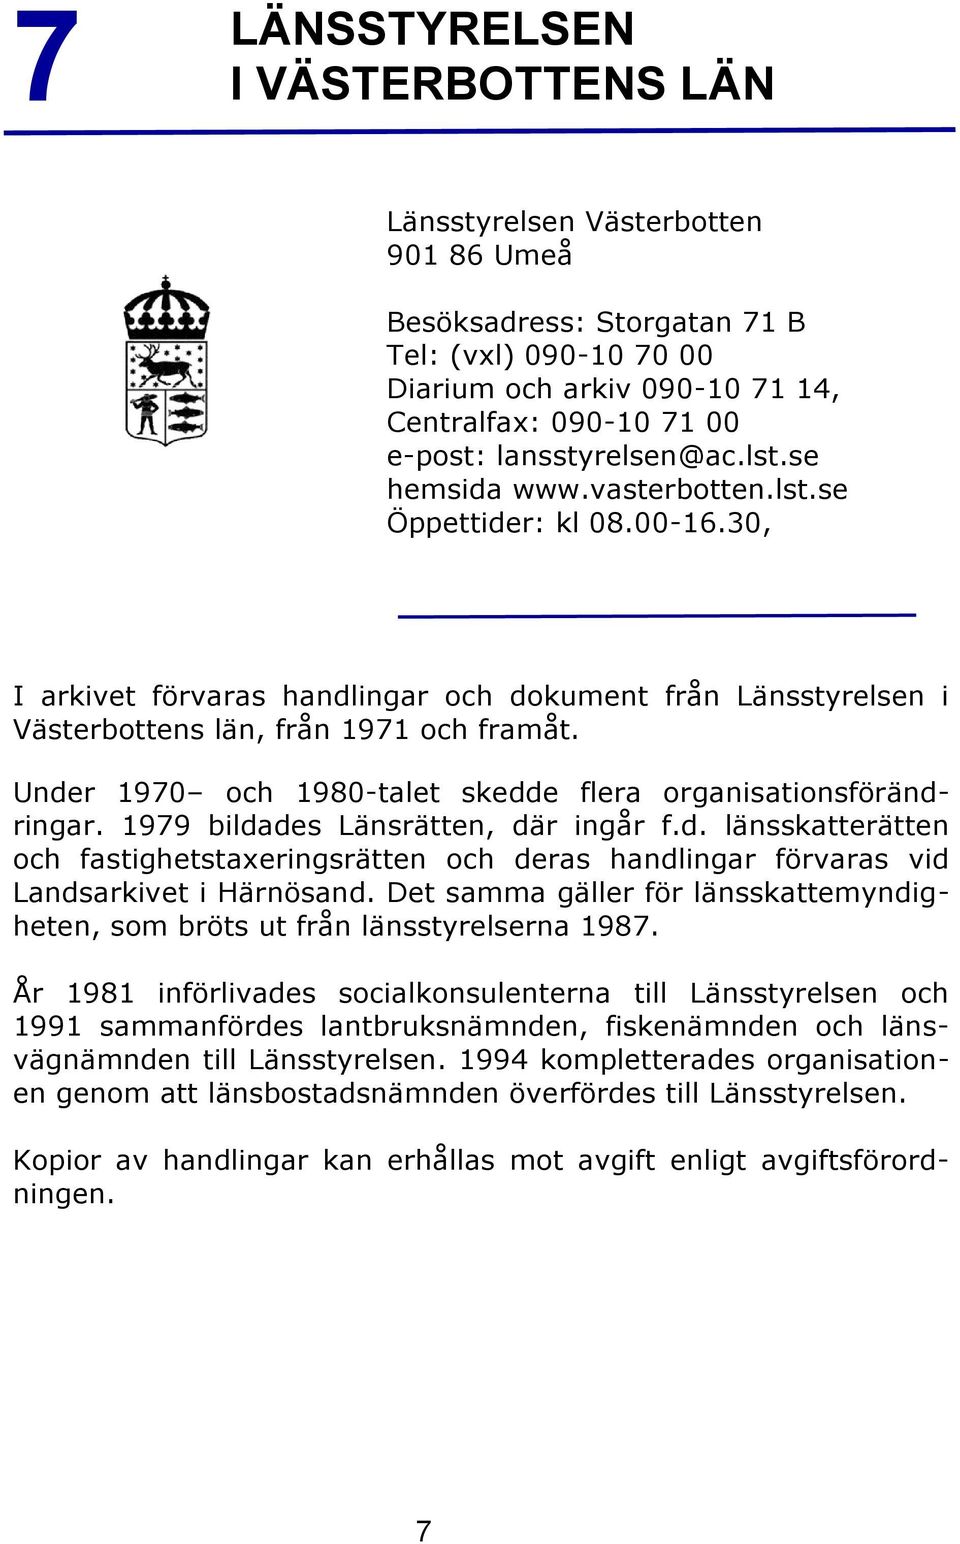 Under 1970 och 1980-talet skedde flera organisationsförändringar. 1979 bildades Länsrätten, där ingår f.d. länsskatterätten och fastighetstaxeringsrätten och deras handlingar förvaras vid Landsarkivet i Härnösand.